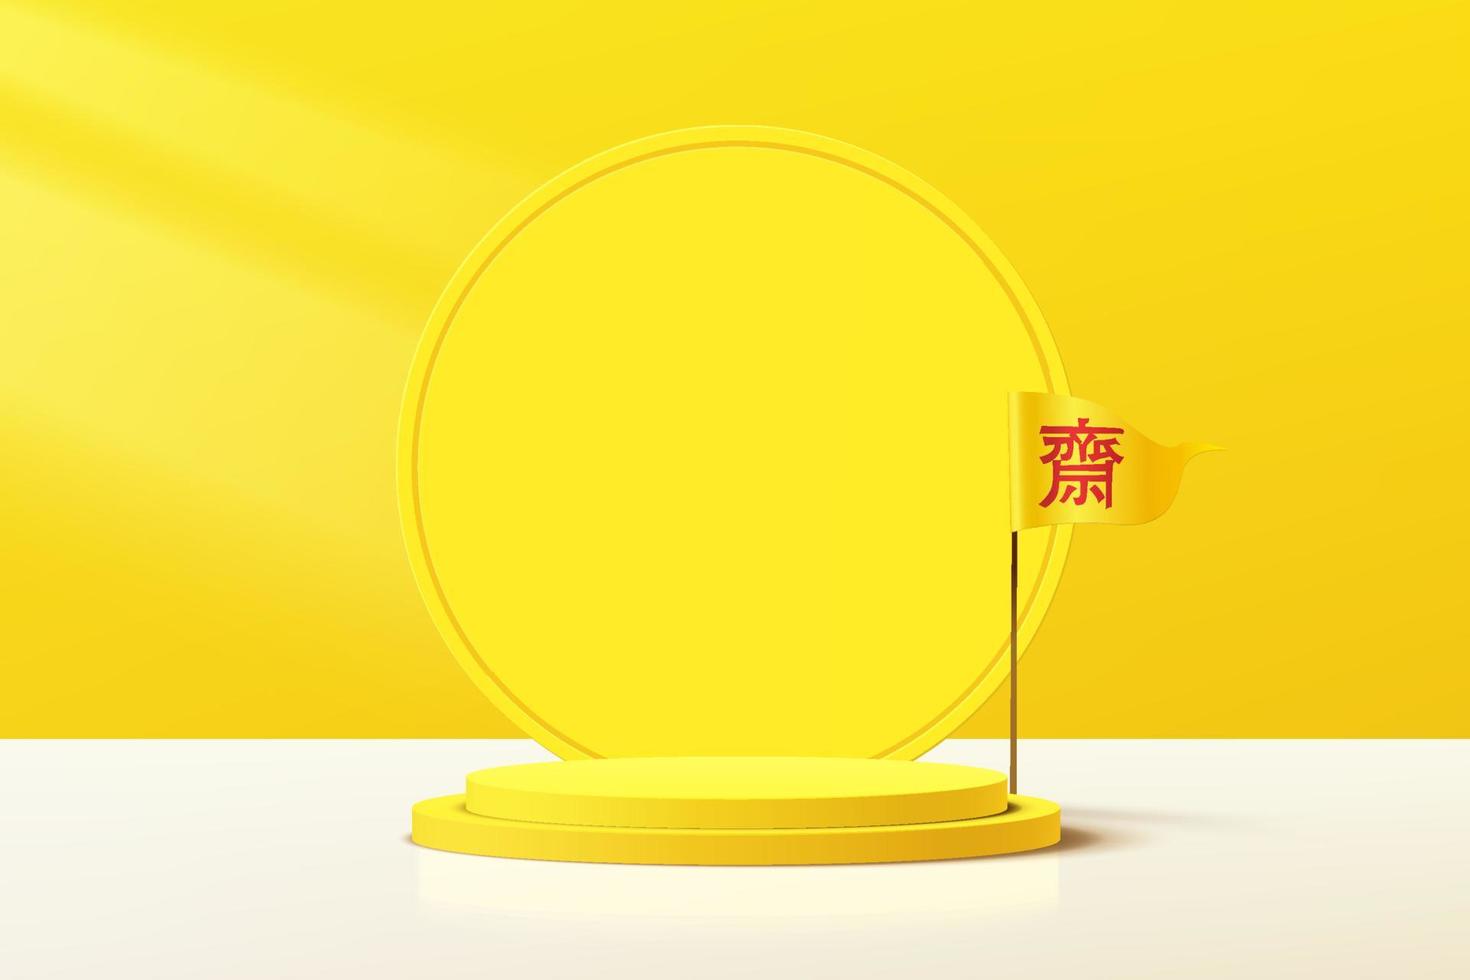 abstrakt 3d gul cylinder piedestal podium med cirkel bakgrund och kinesisk vegetarisk festival flagga. nio kejsargudar festivalscen för produktpresentation. vektor rendering design.